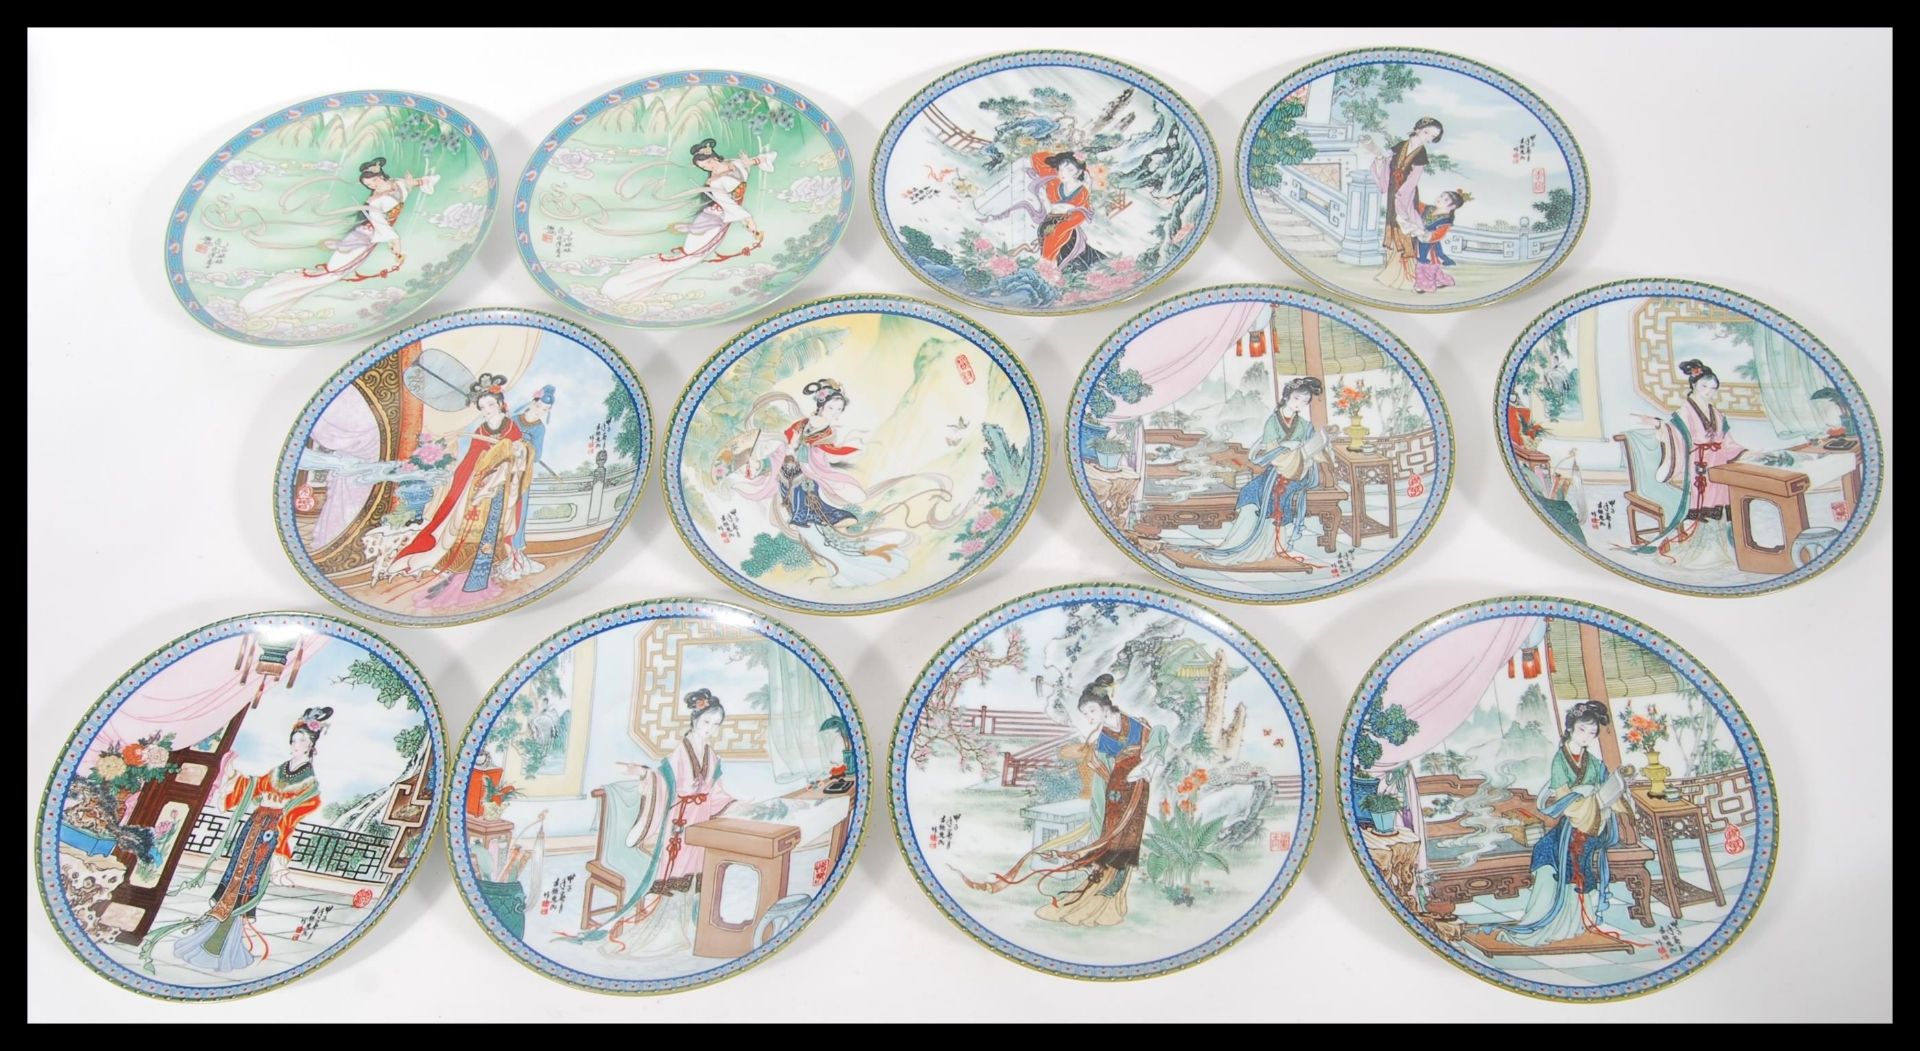 A collection of twelve 1989 Imperial Jingdezhen porcelain decorative collectors plates, depicting